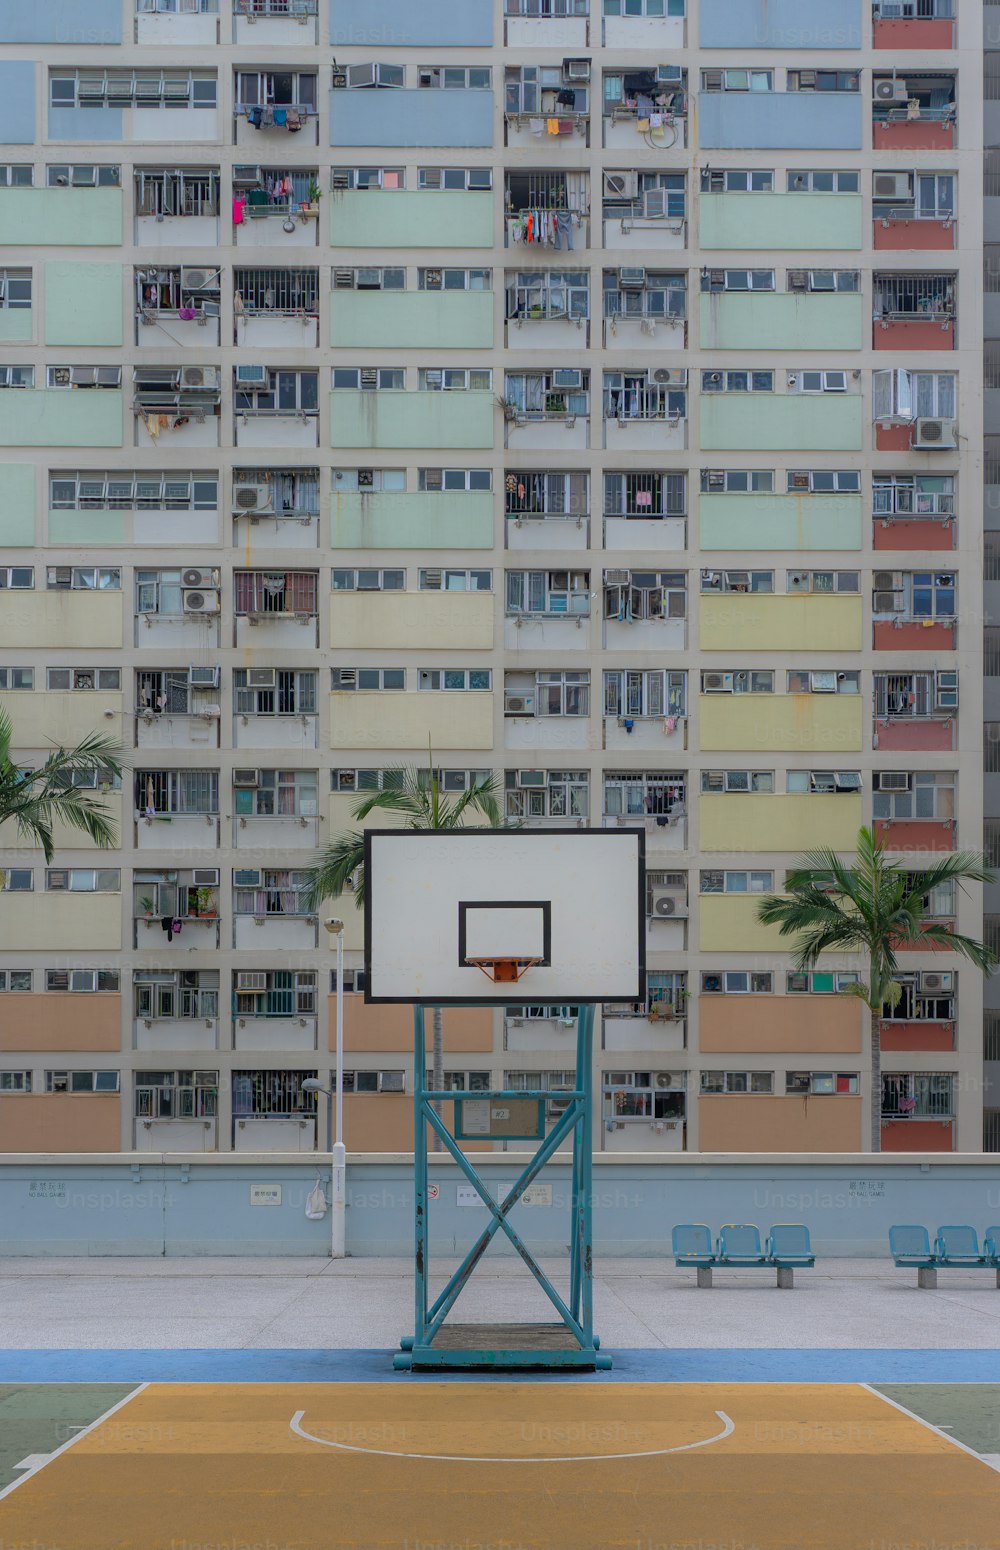 Ein Basketballplatz vor einem hohen Gebäude